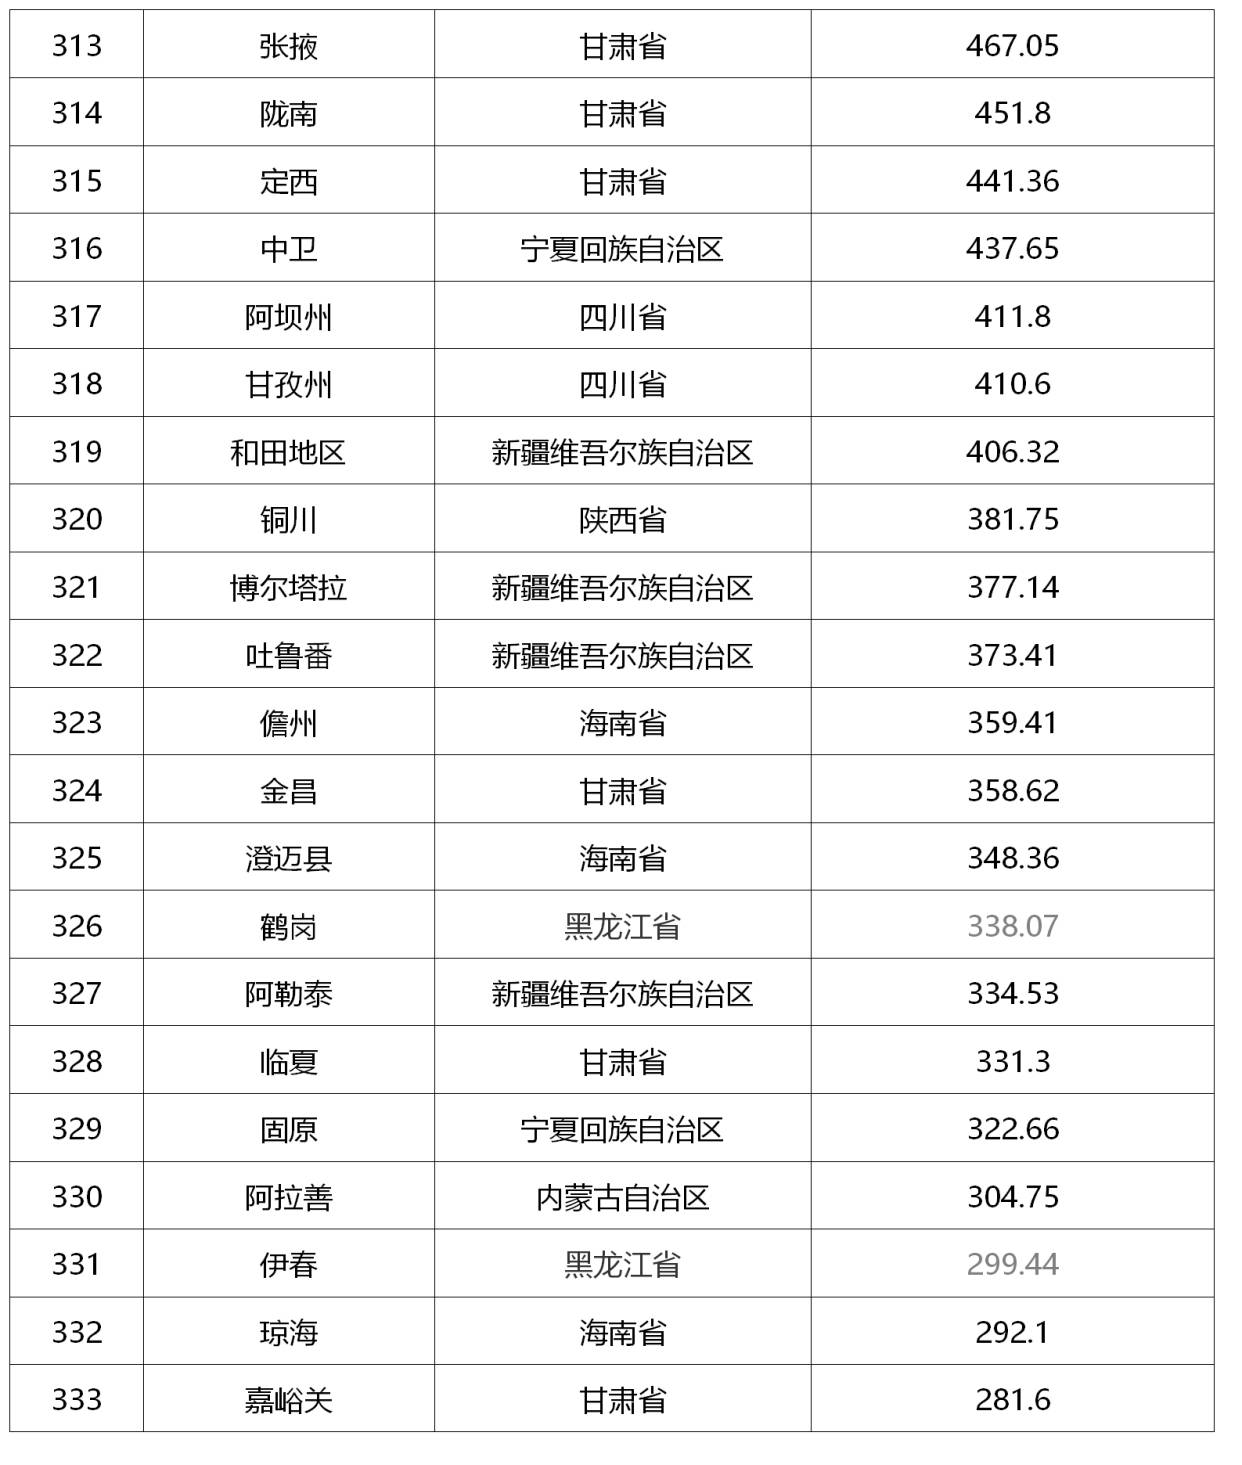 芜湖2020gdp排名_酒都遵义的2020年一季度GDP出炉,在贵州省内排名第几